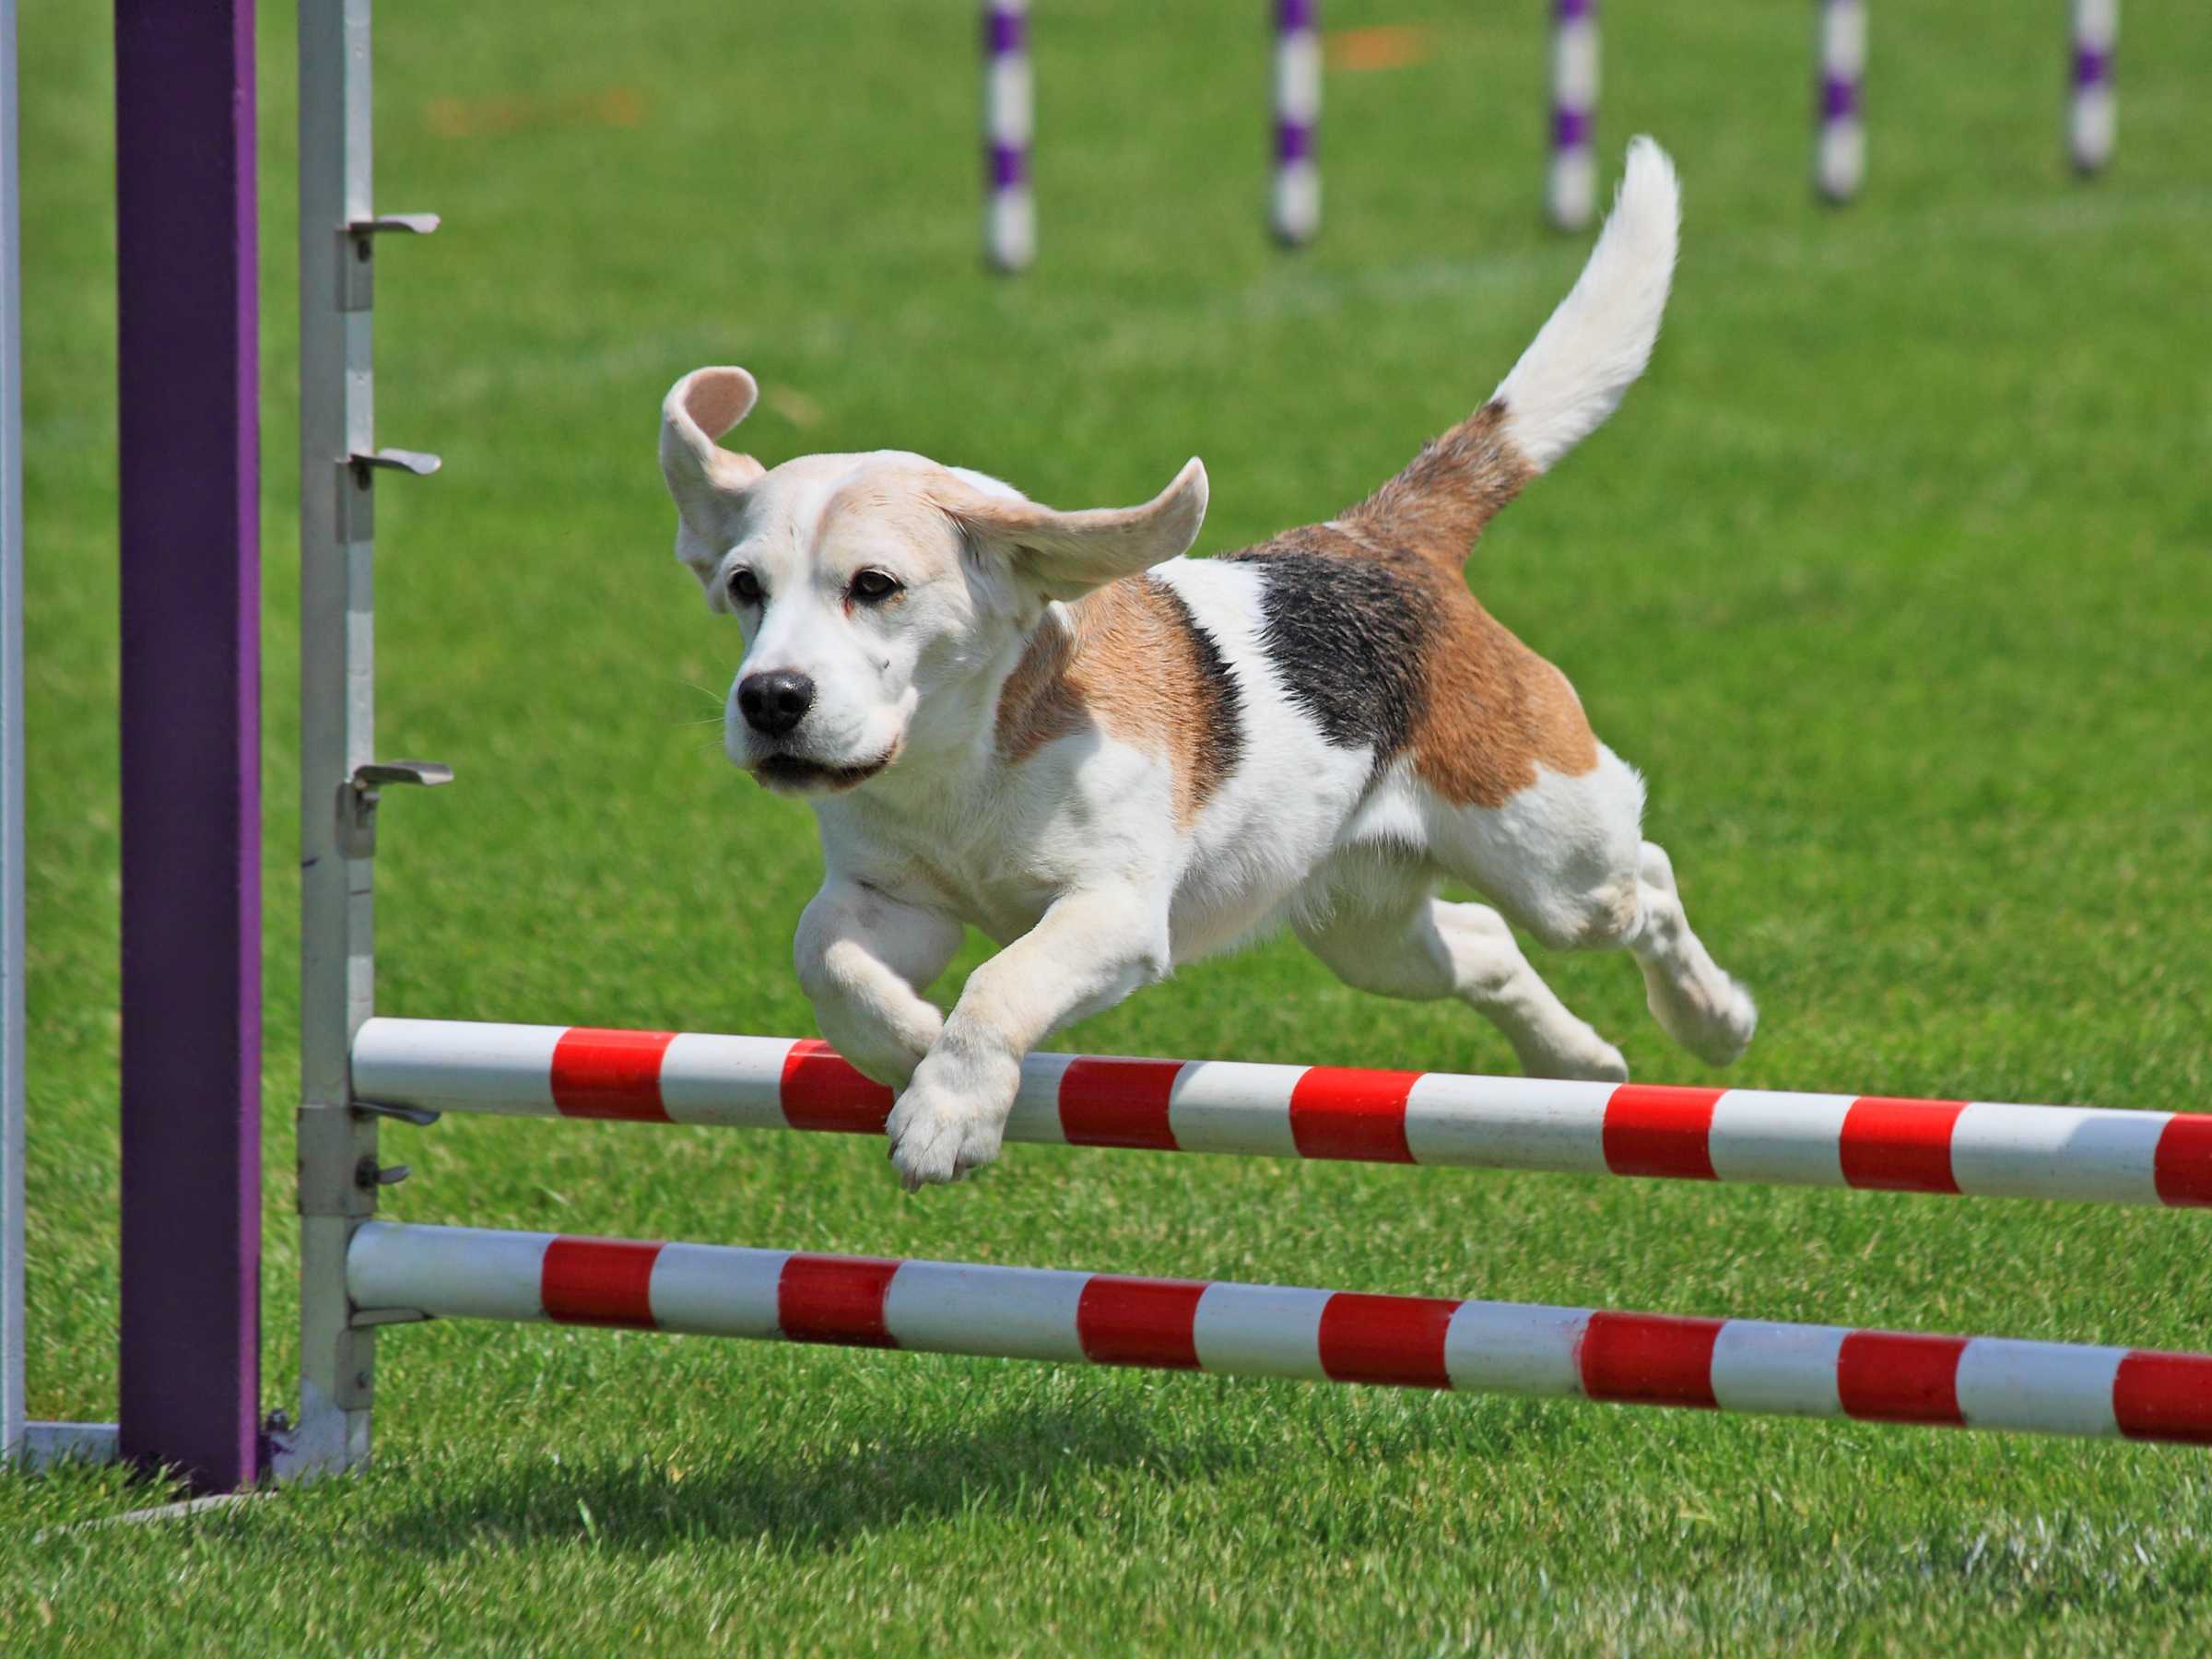 Аджилити для собак: правила и условия участия, уровни сложности в зависимости от препятствий и снарядов, подготовка собаки к аджилити